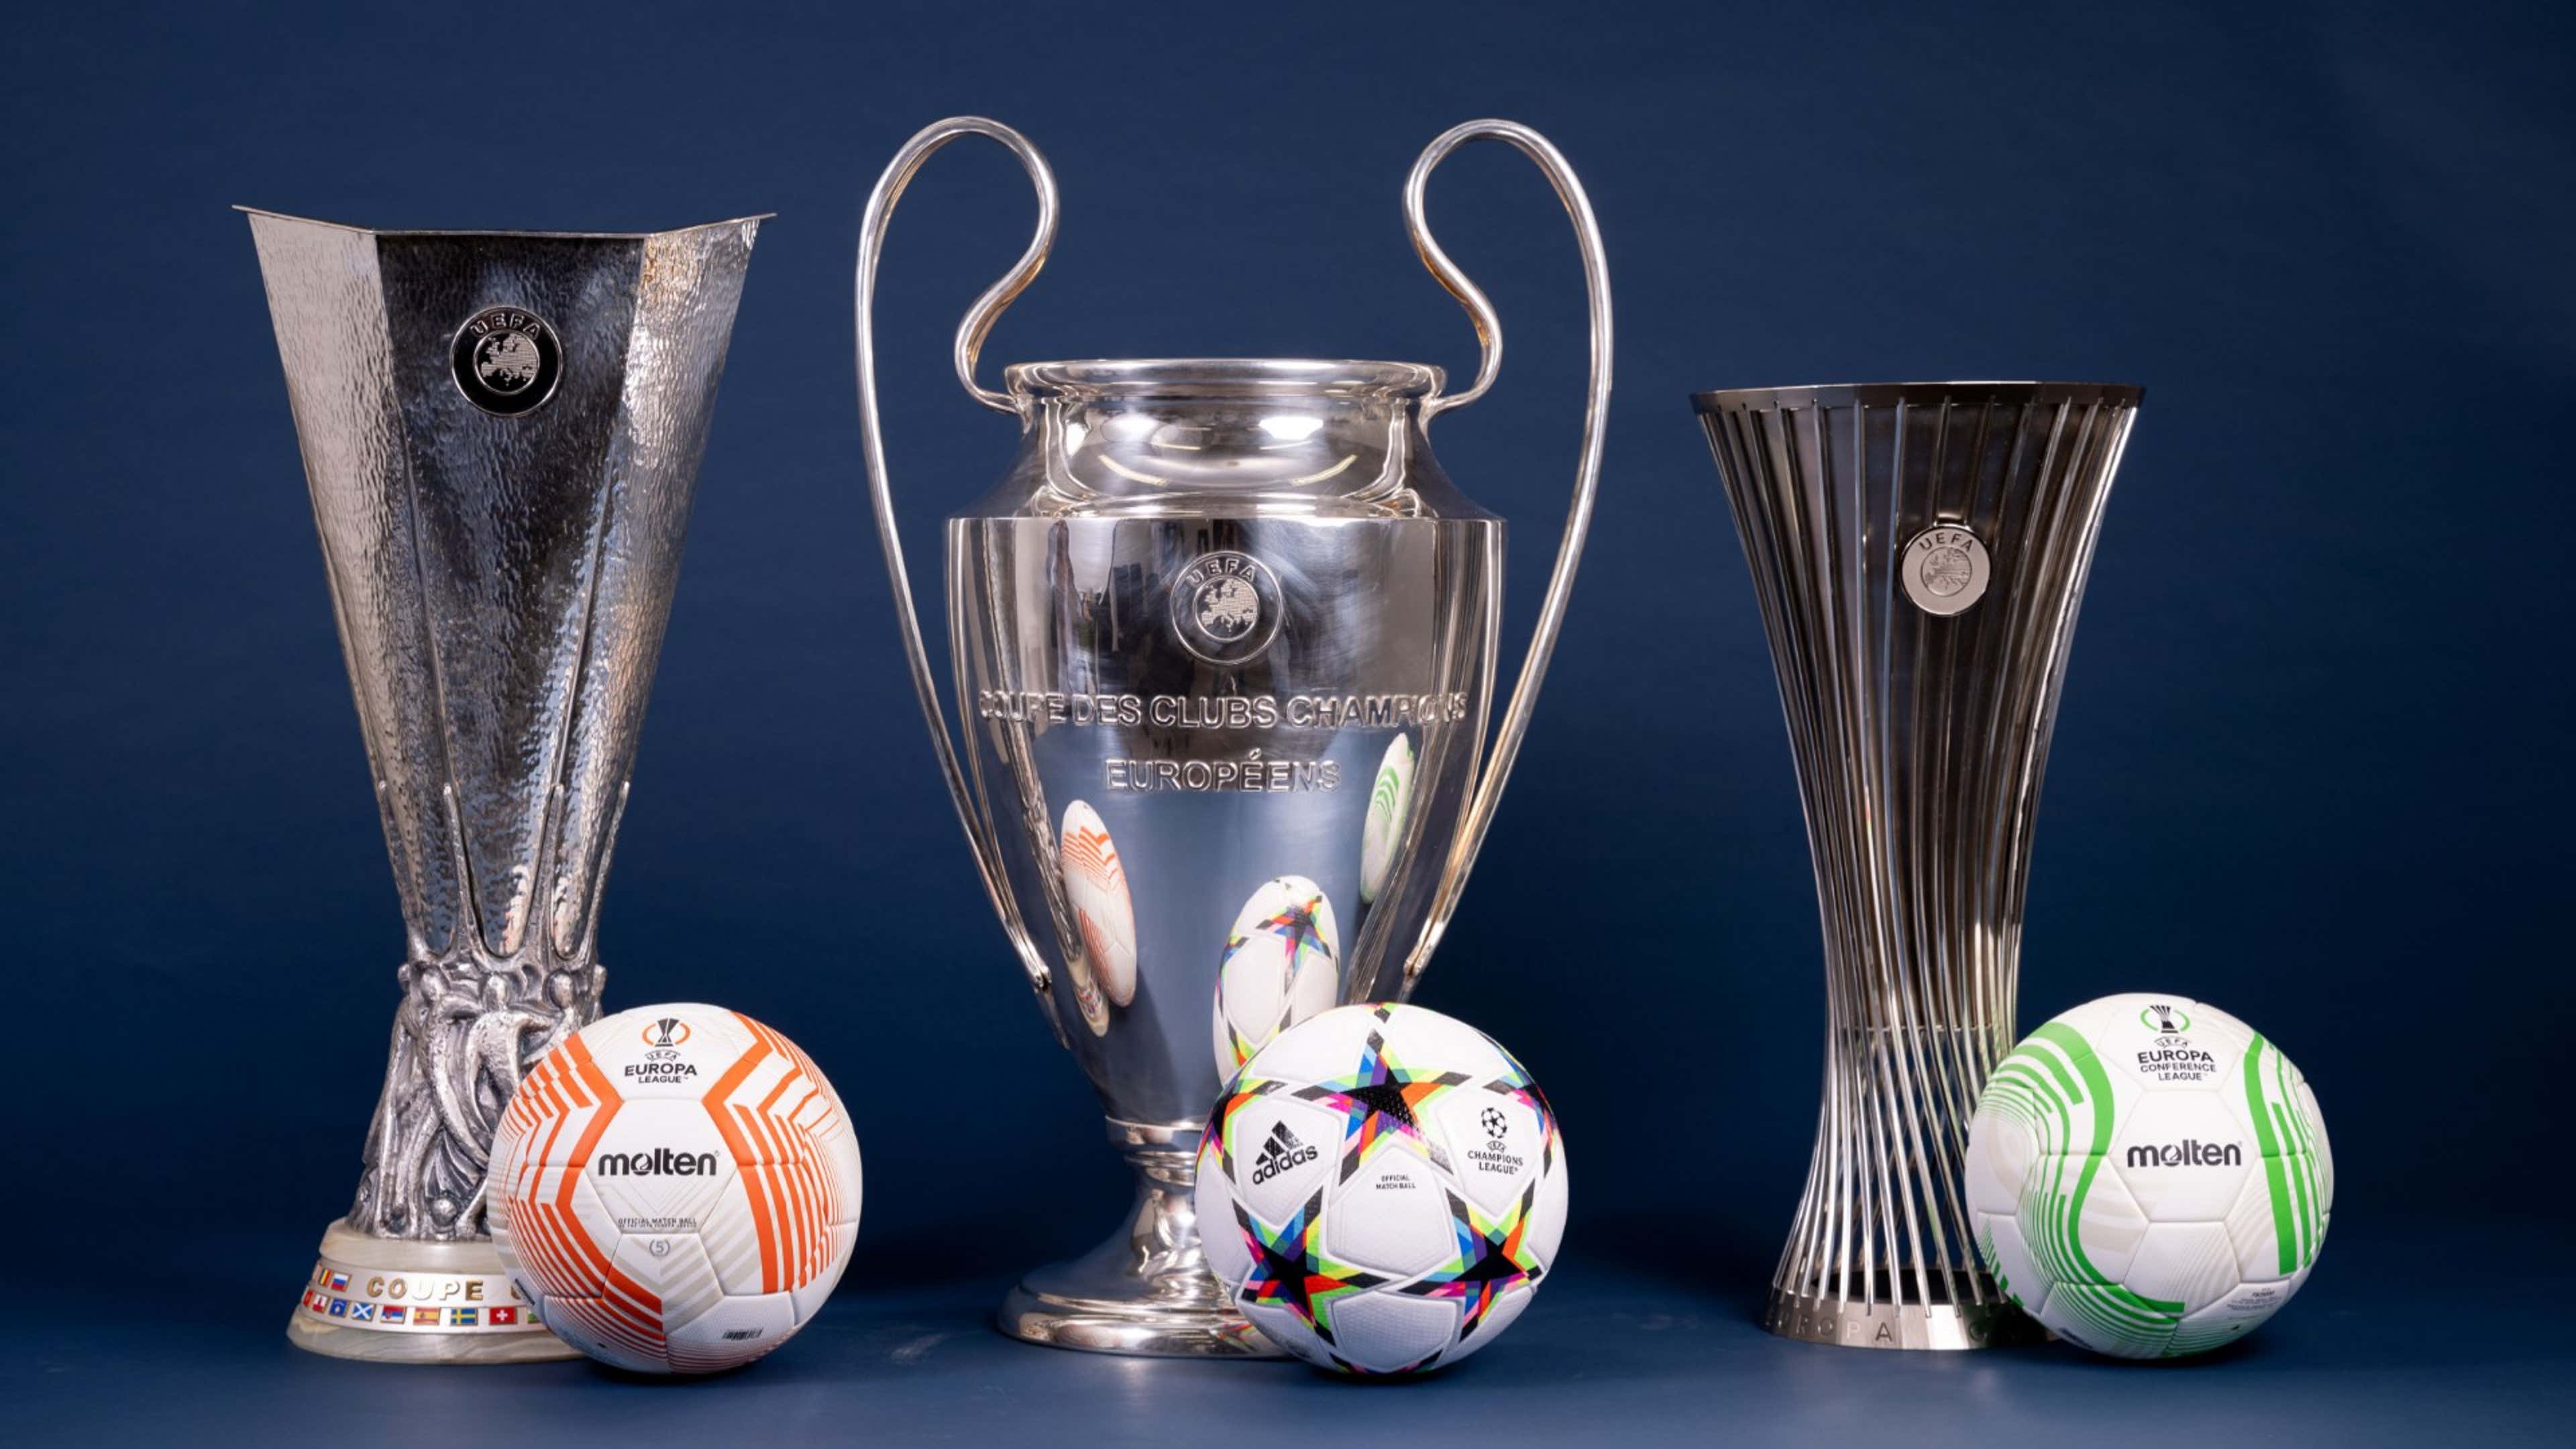 Europa League Champions League Conference League